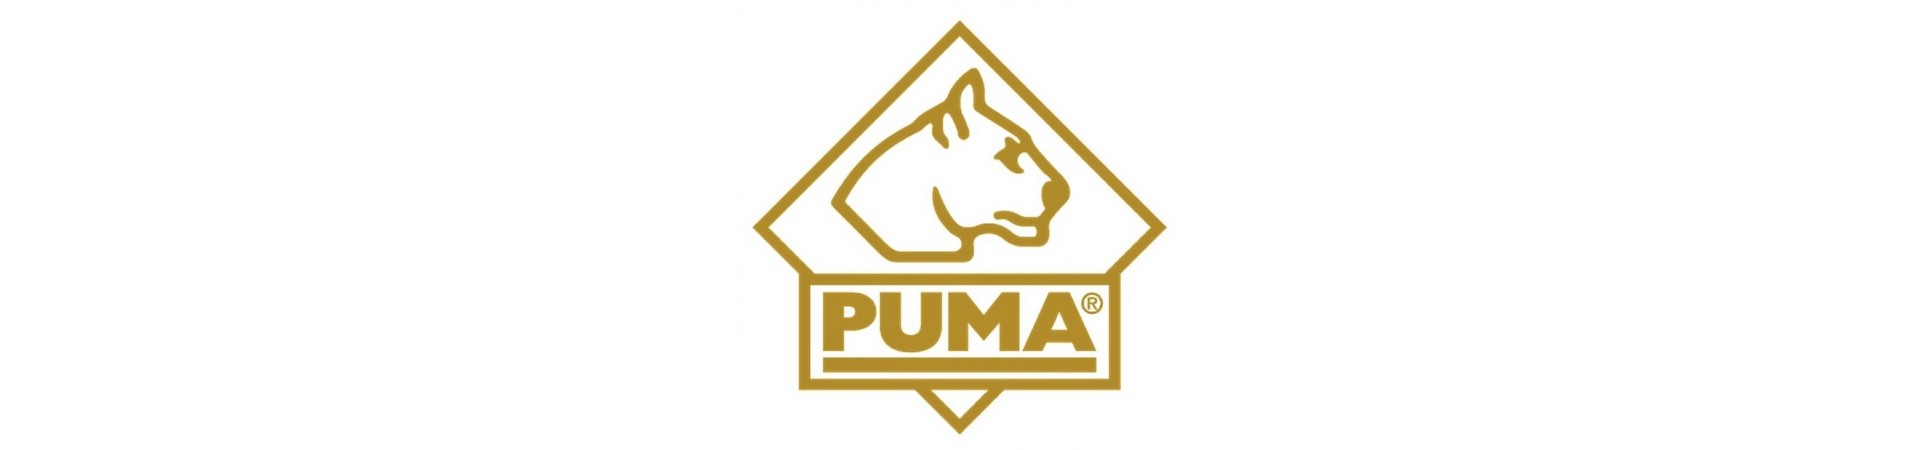 Puma-Messer